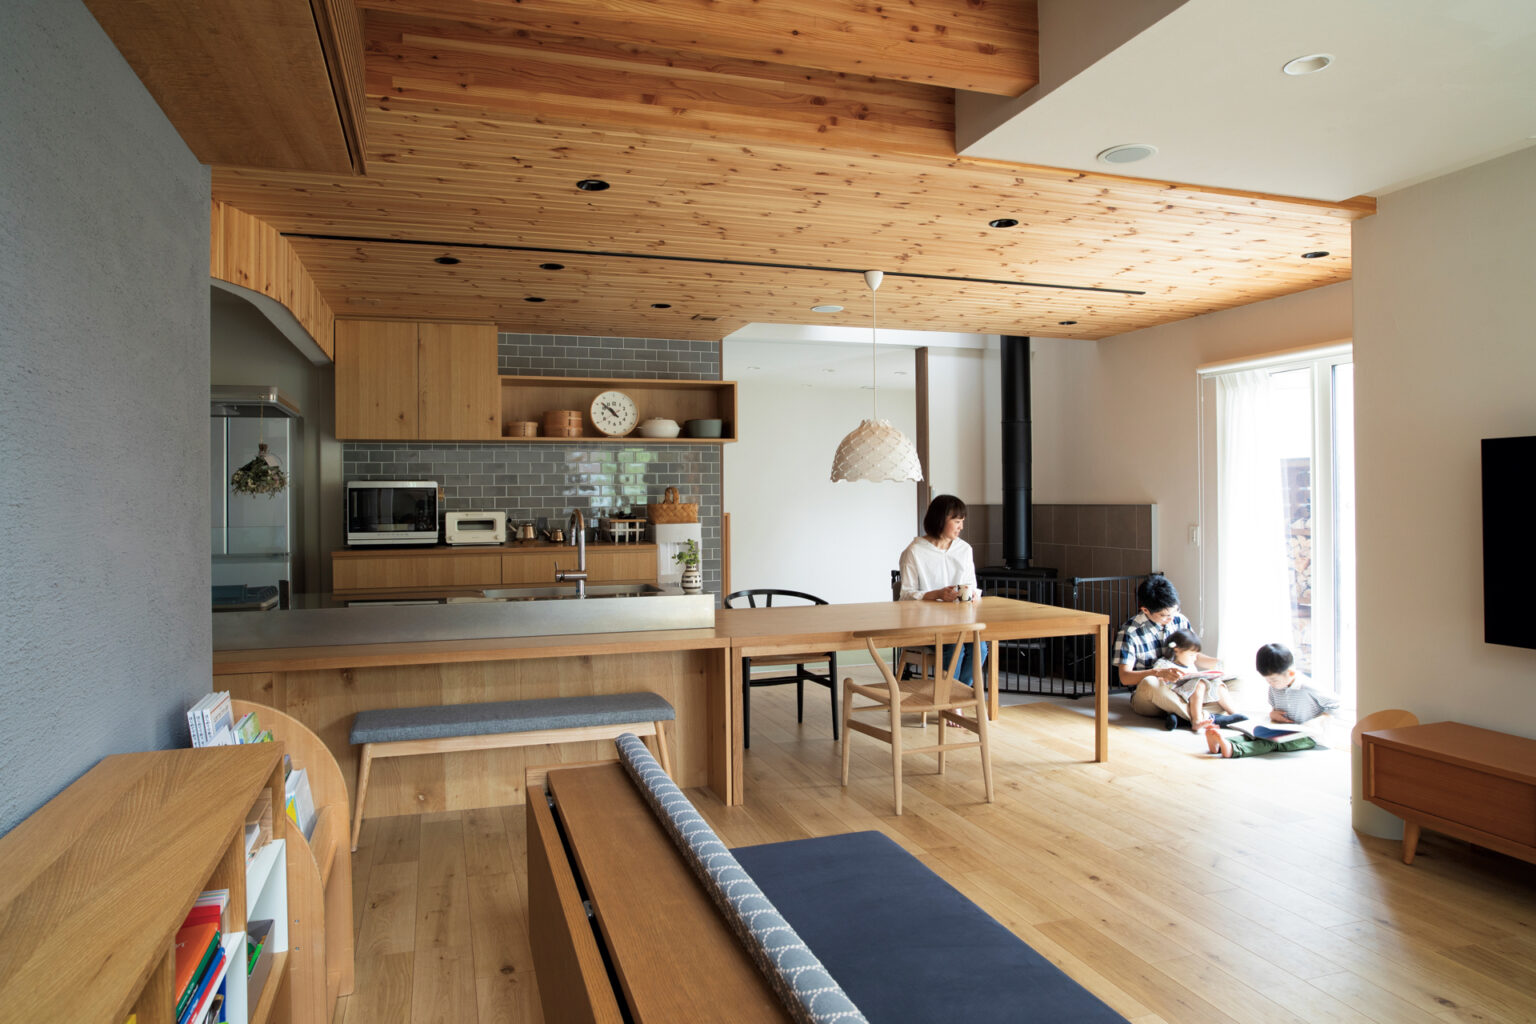 【札幌市中央区】建築主と設計者がともに絵を描き、理想を追求した片流れ屋根の家